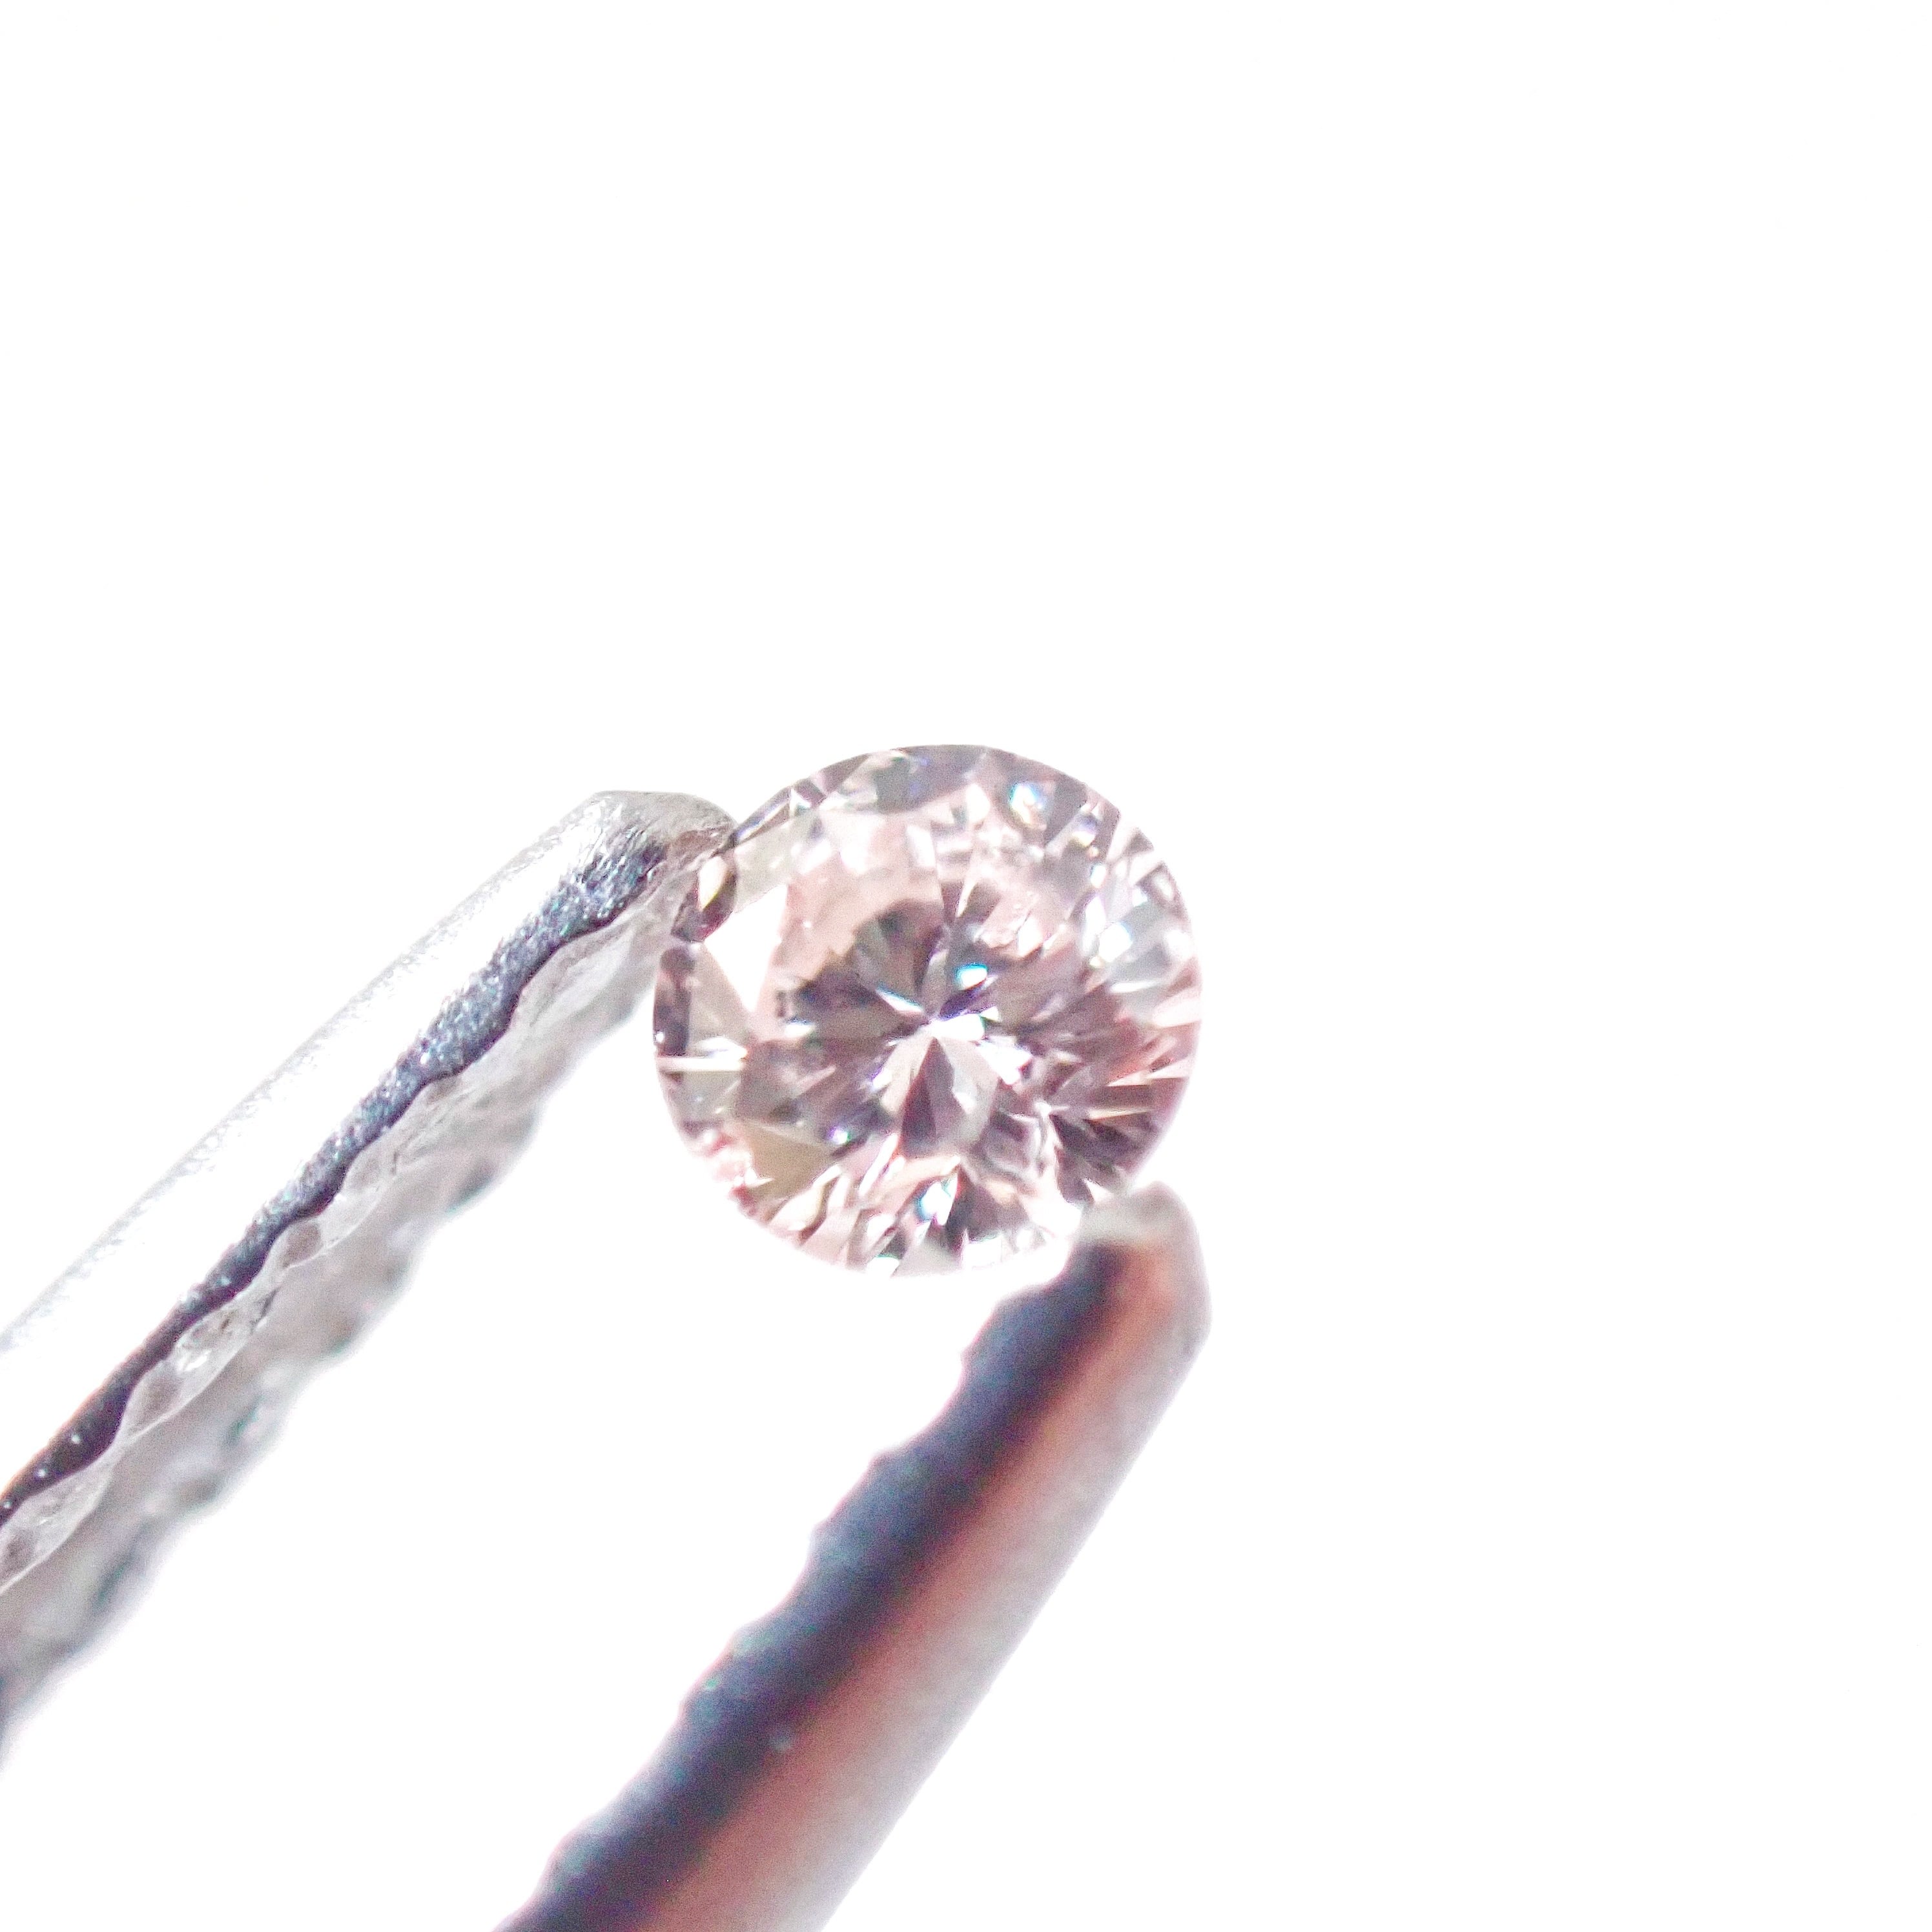 【特価品】0.226ct ダイヤモンド ルース 裸石 天然ダイヤモンドダイヤモンド